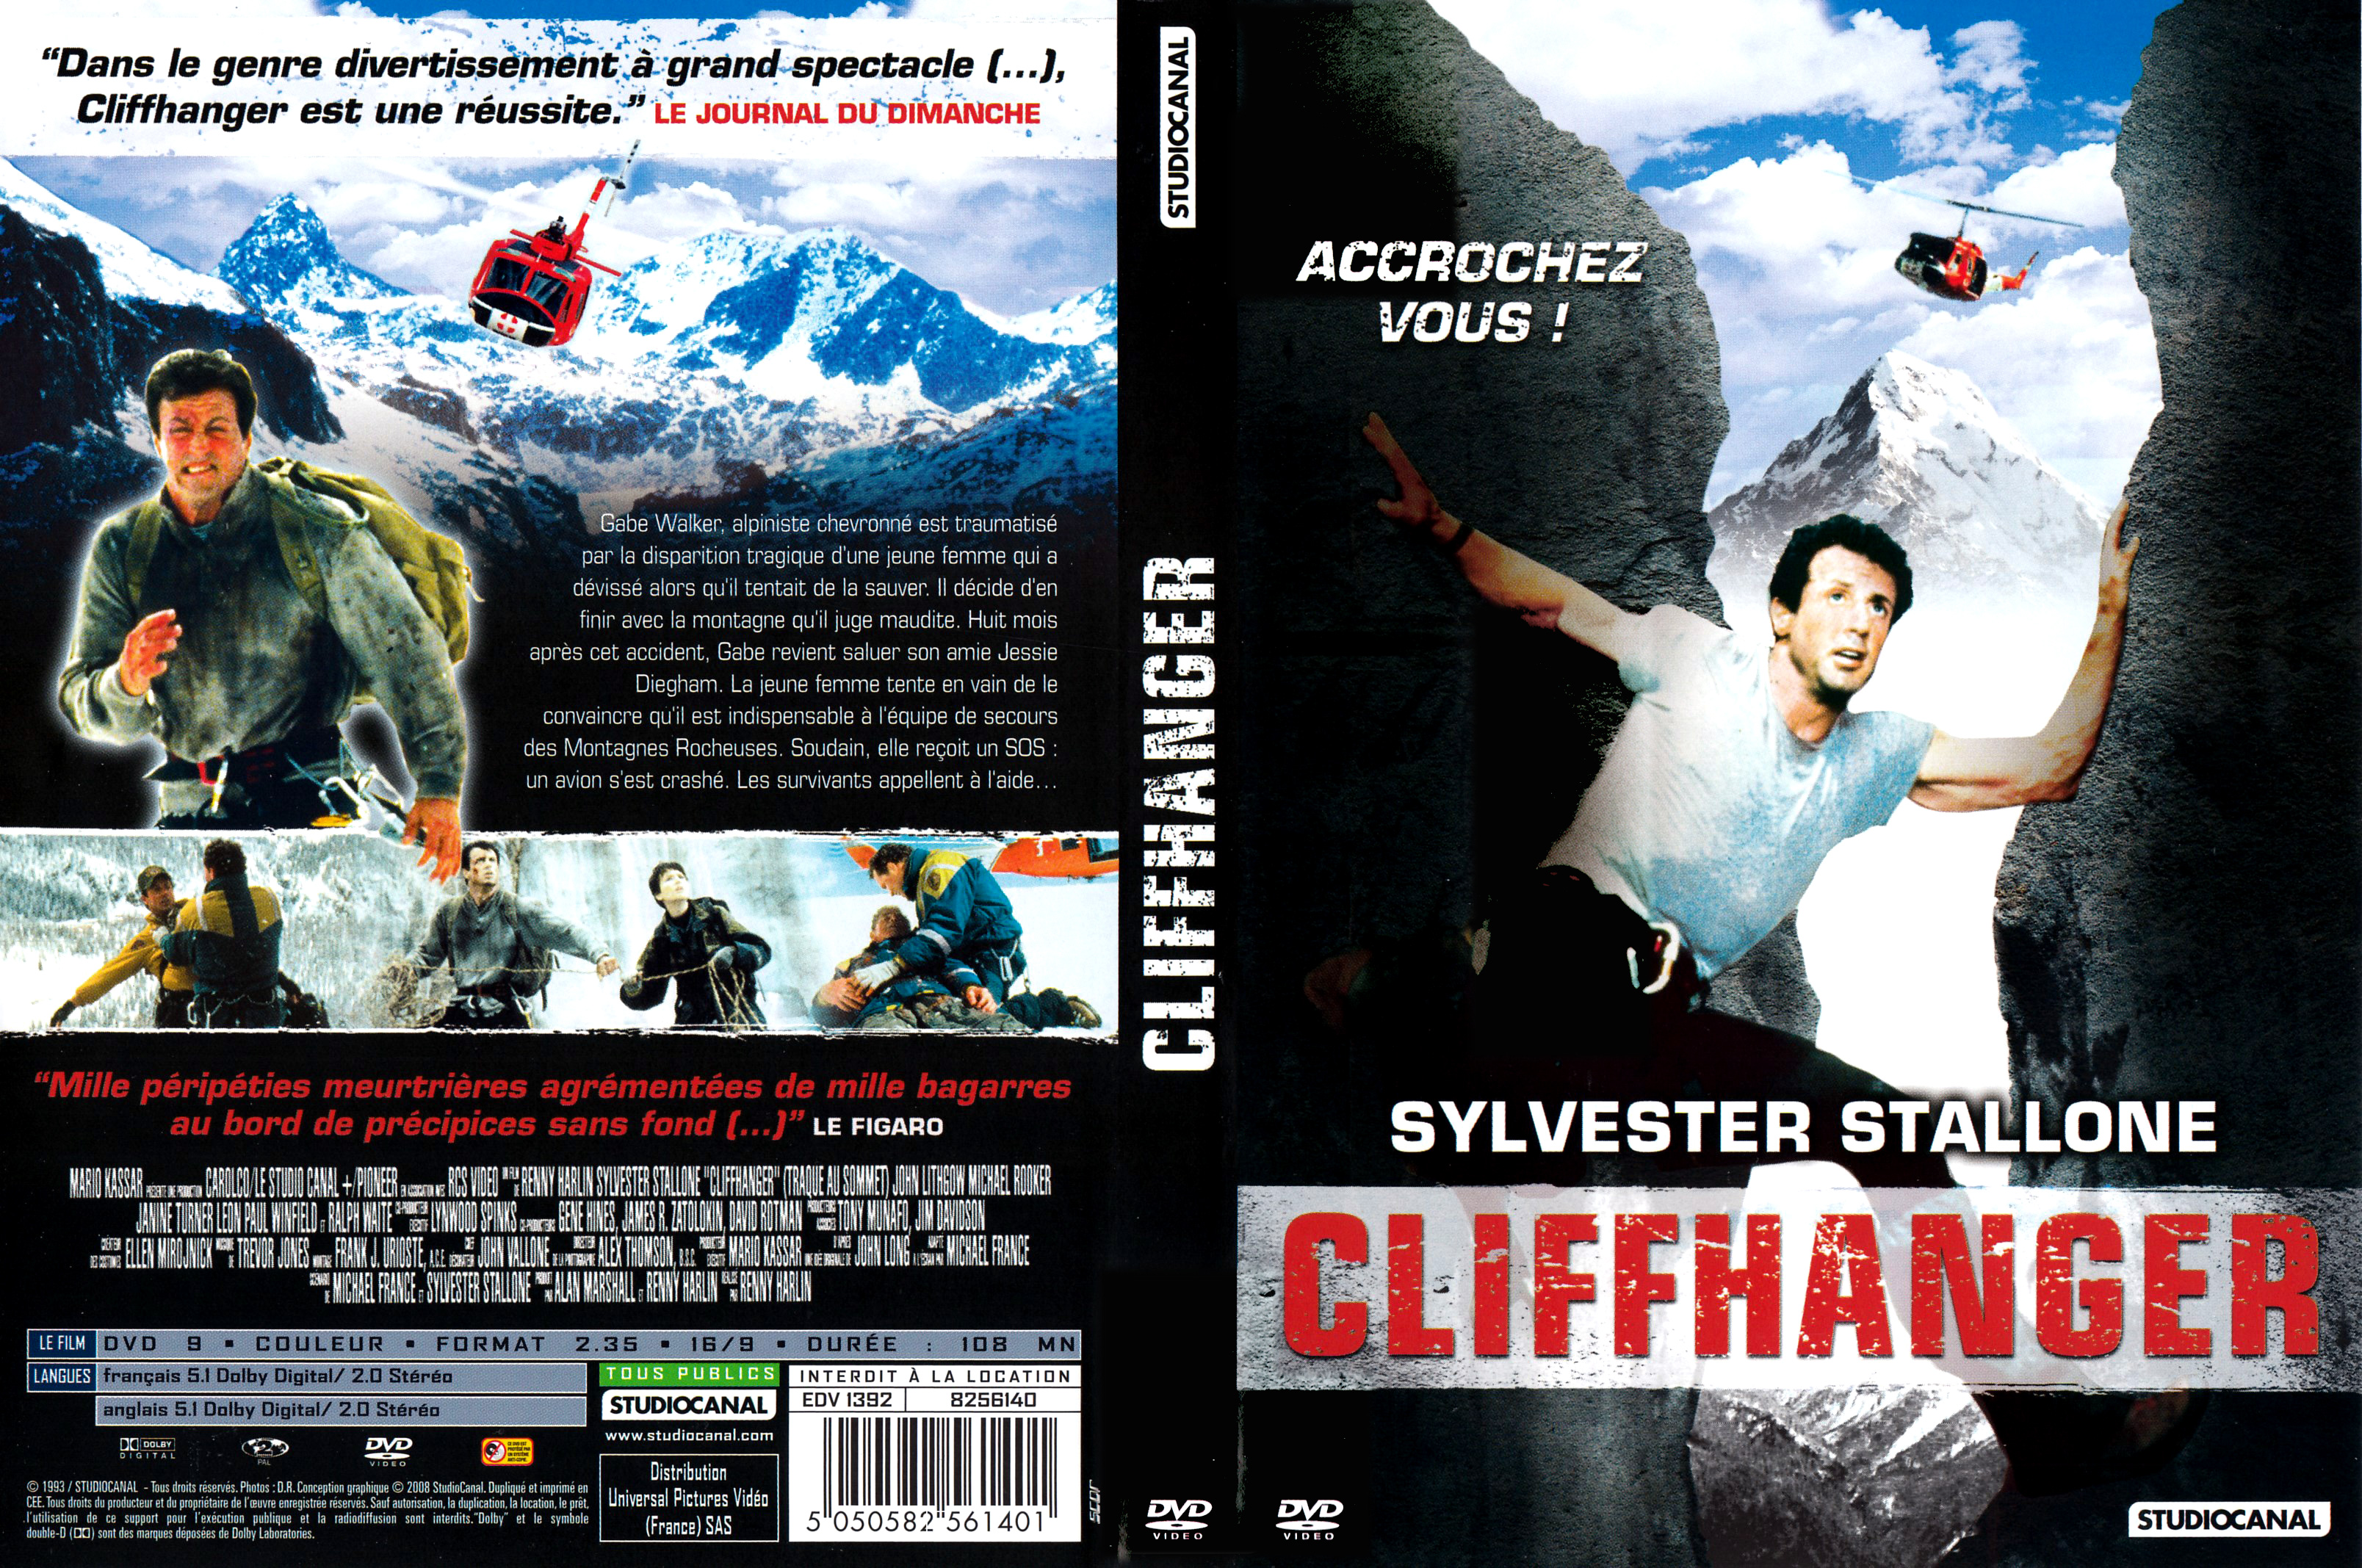 Jaquette DVD Cliffhanger v4